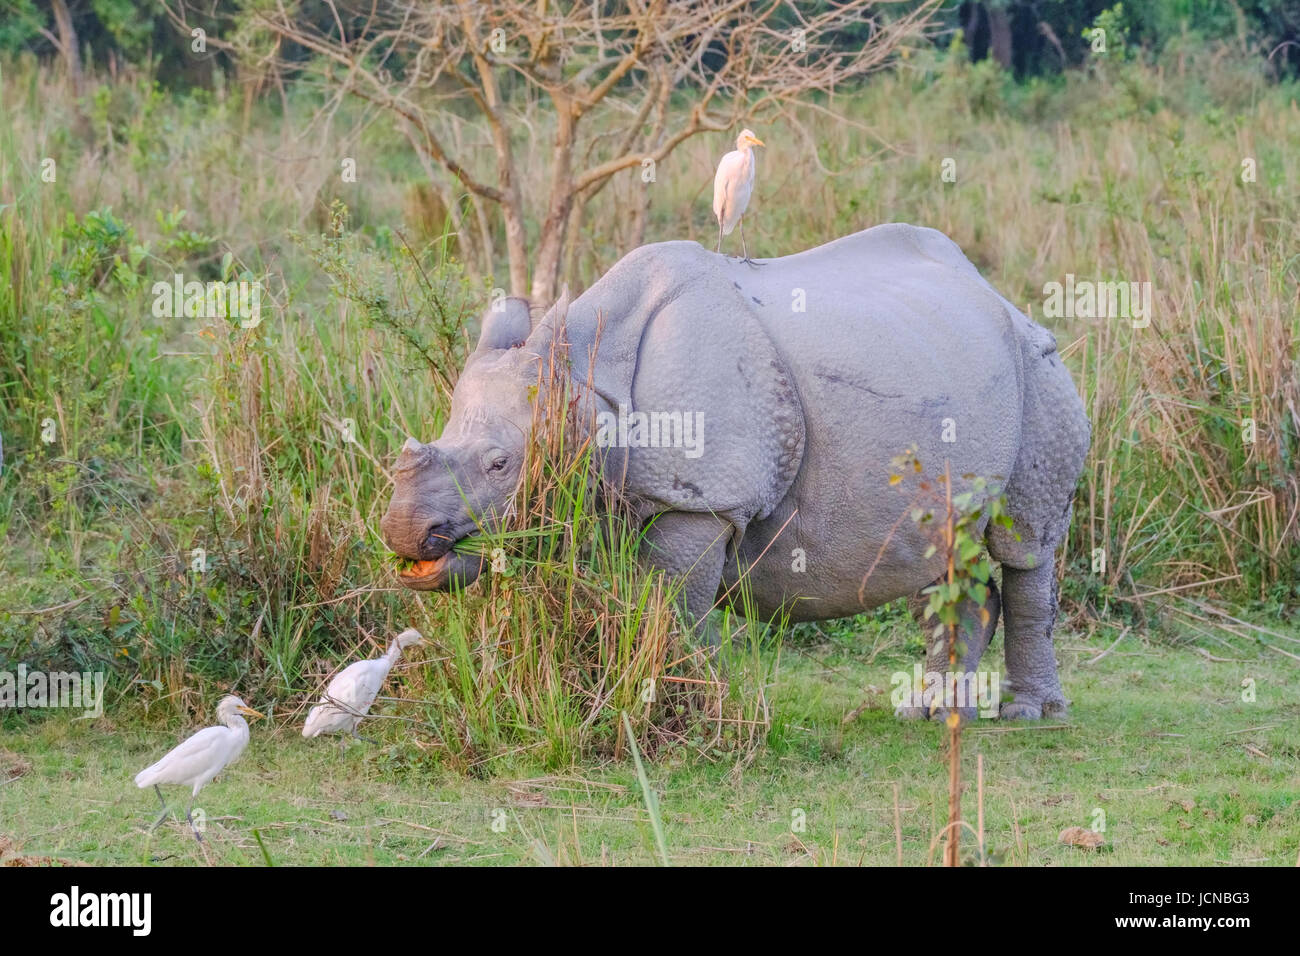 Rinoceronte indio, Rhinoceros unicornis, especies en peligro de extinción con Garganta de Ganado, Bubulcus ibis. Parque Nacional Kaziranga, Assam, India. Foto de stock